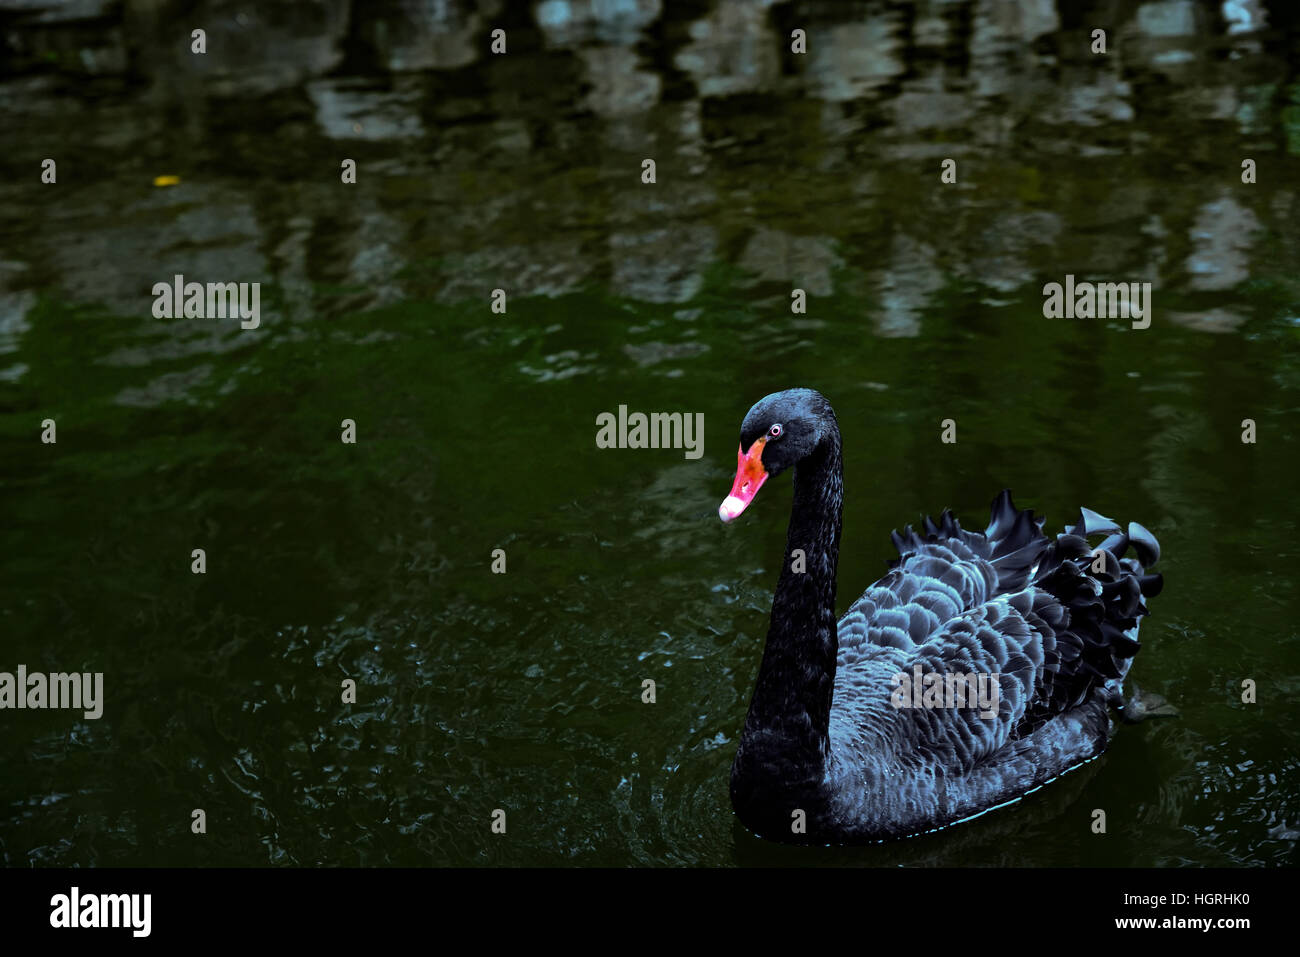 Black Swan, pataugeoire, étang, eau, oiseau, parc Banque D'Images